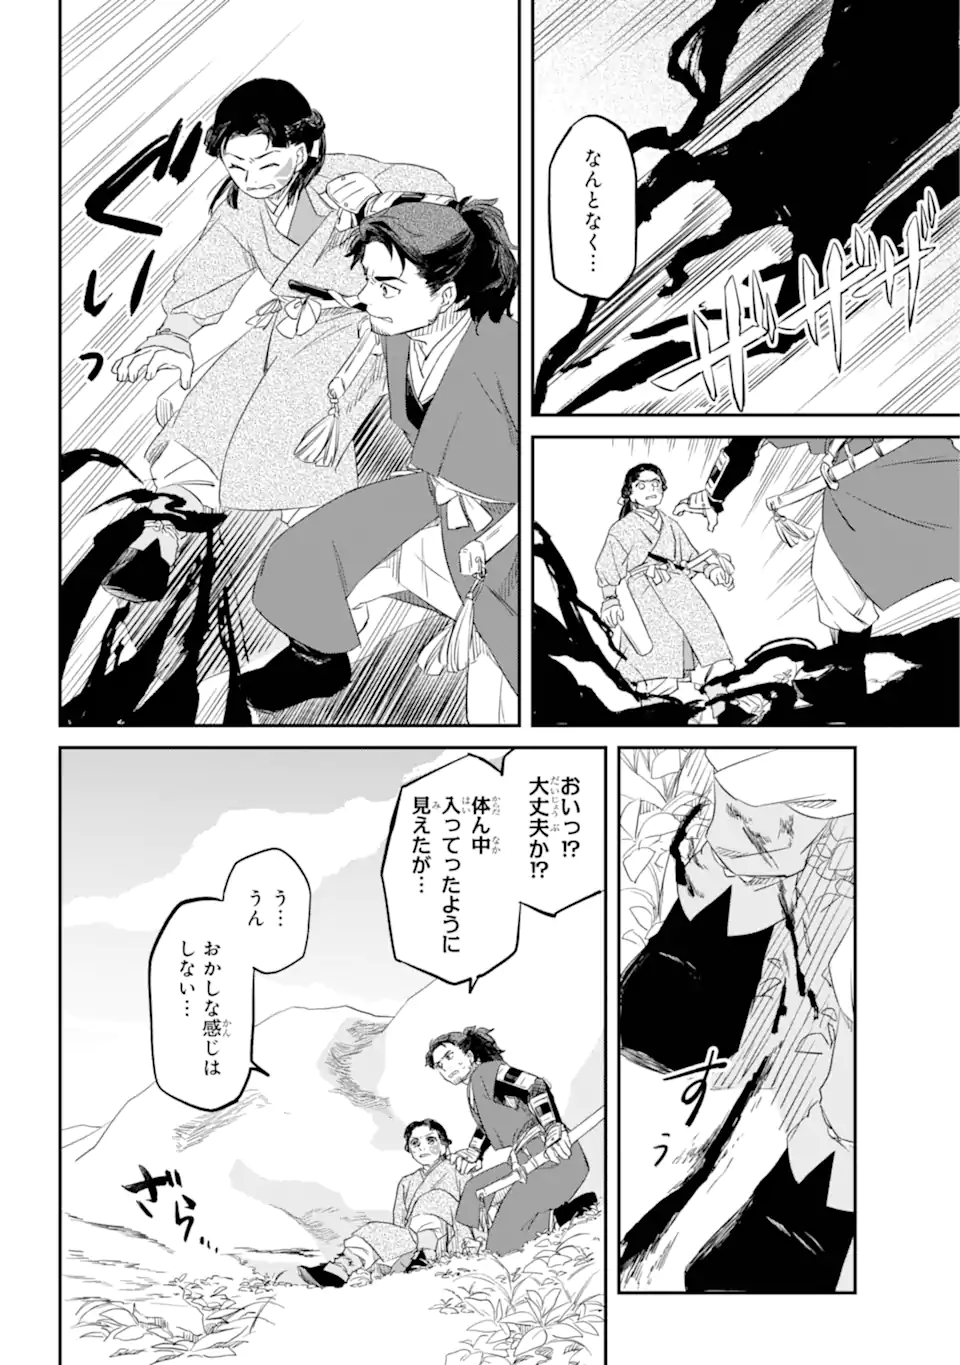 Ryuujin no Musume - Chapter 3.2 - Page 4